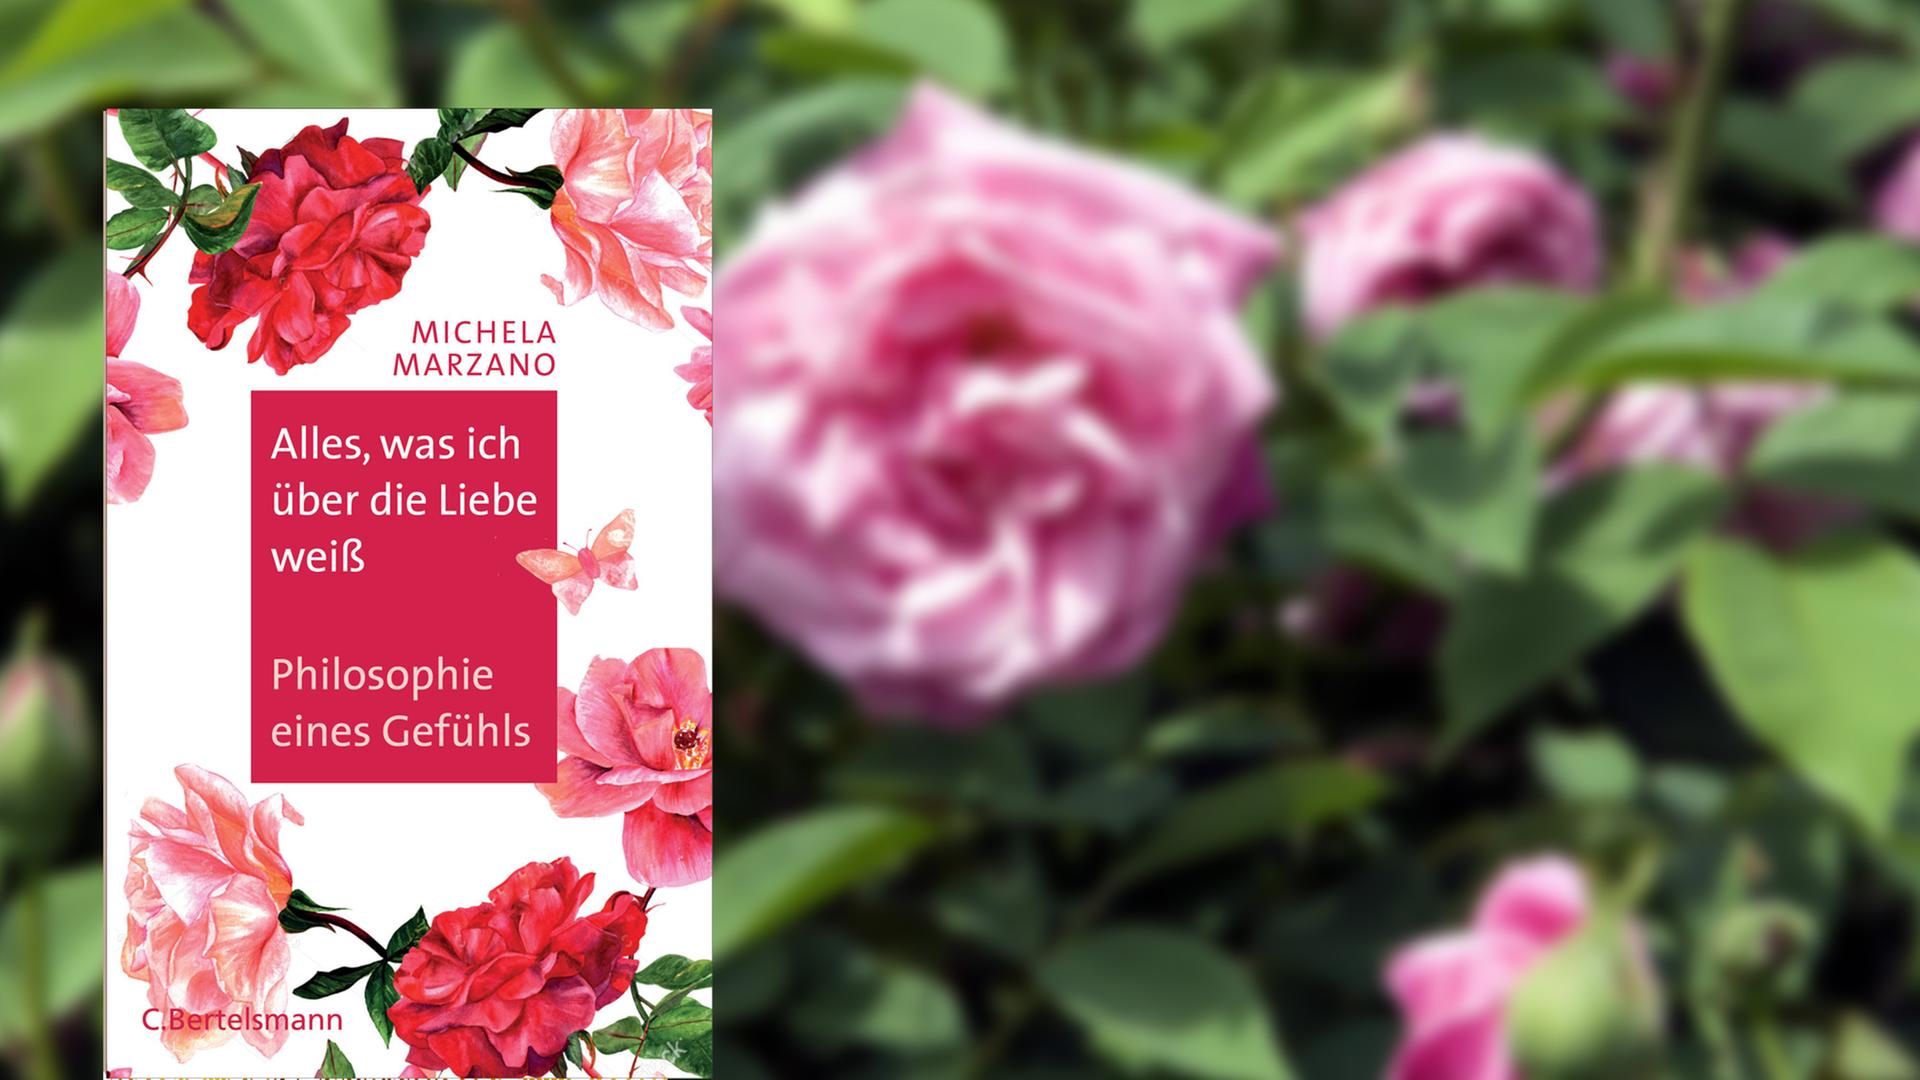 Im Vordergrund das Cover des Buches "Alles, was ich über die Liebe weiß - Philosophie eines Gefühls", im Hintergrund ein Bild mit einem Rosenstrauch